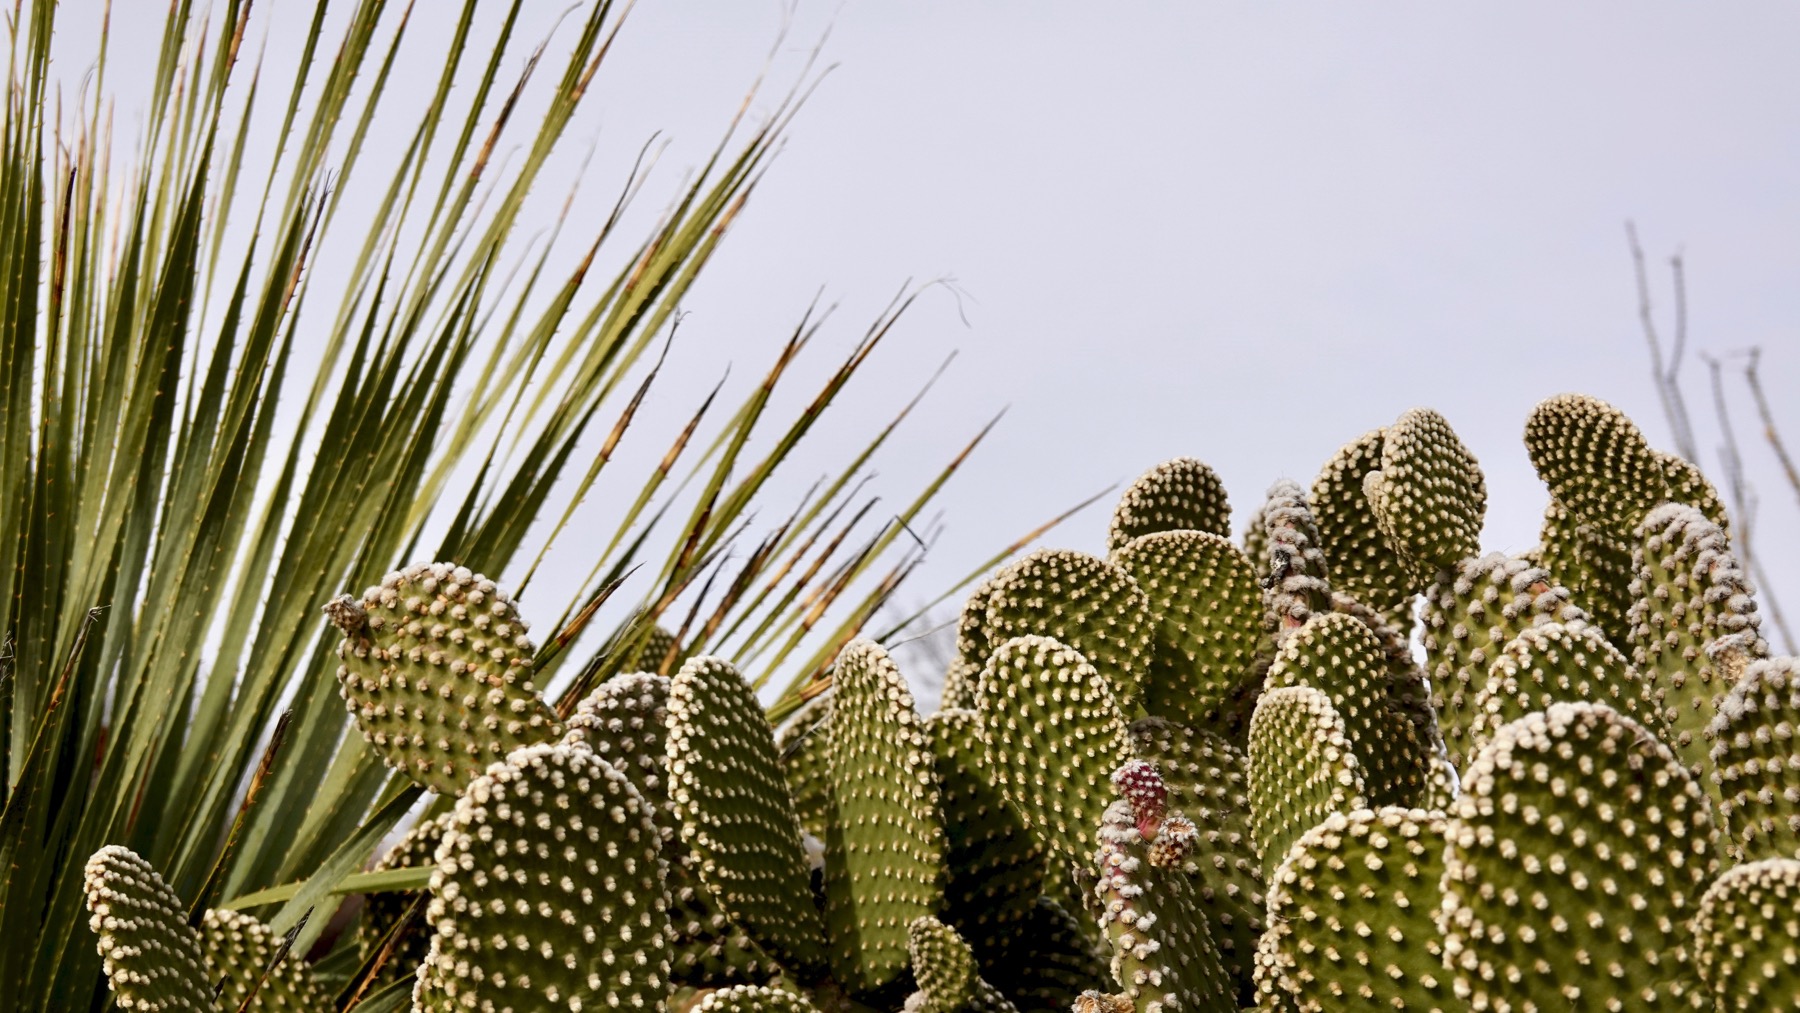 Cactus view